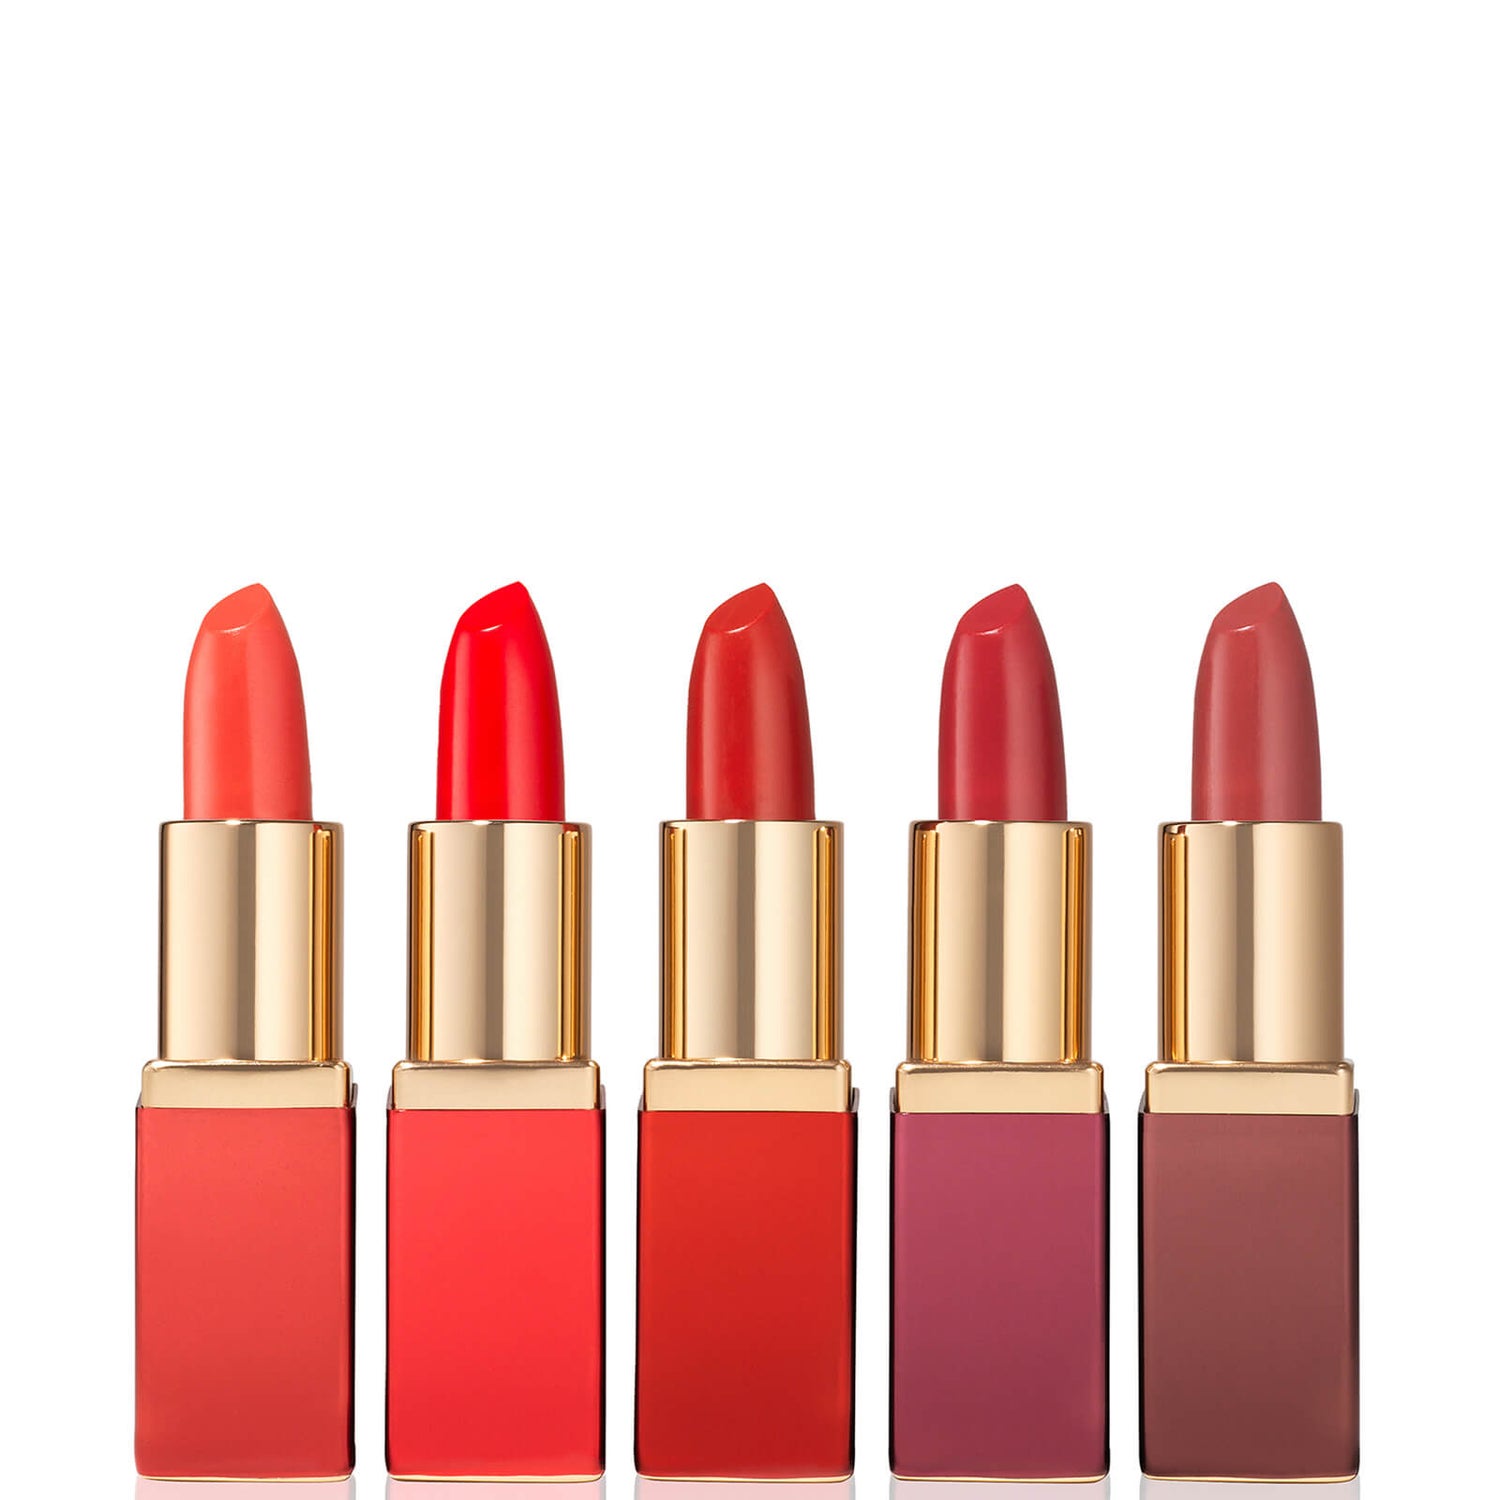 Estee Lauder Pure Color Envy Mini Lipstick Wonders 5-Piece Gift Set (Worth £48.00)